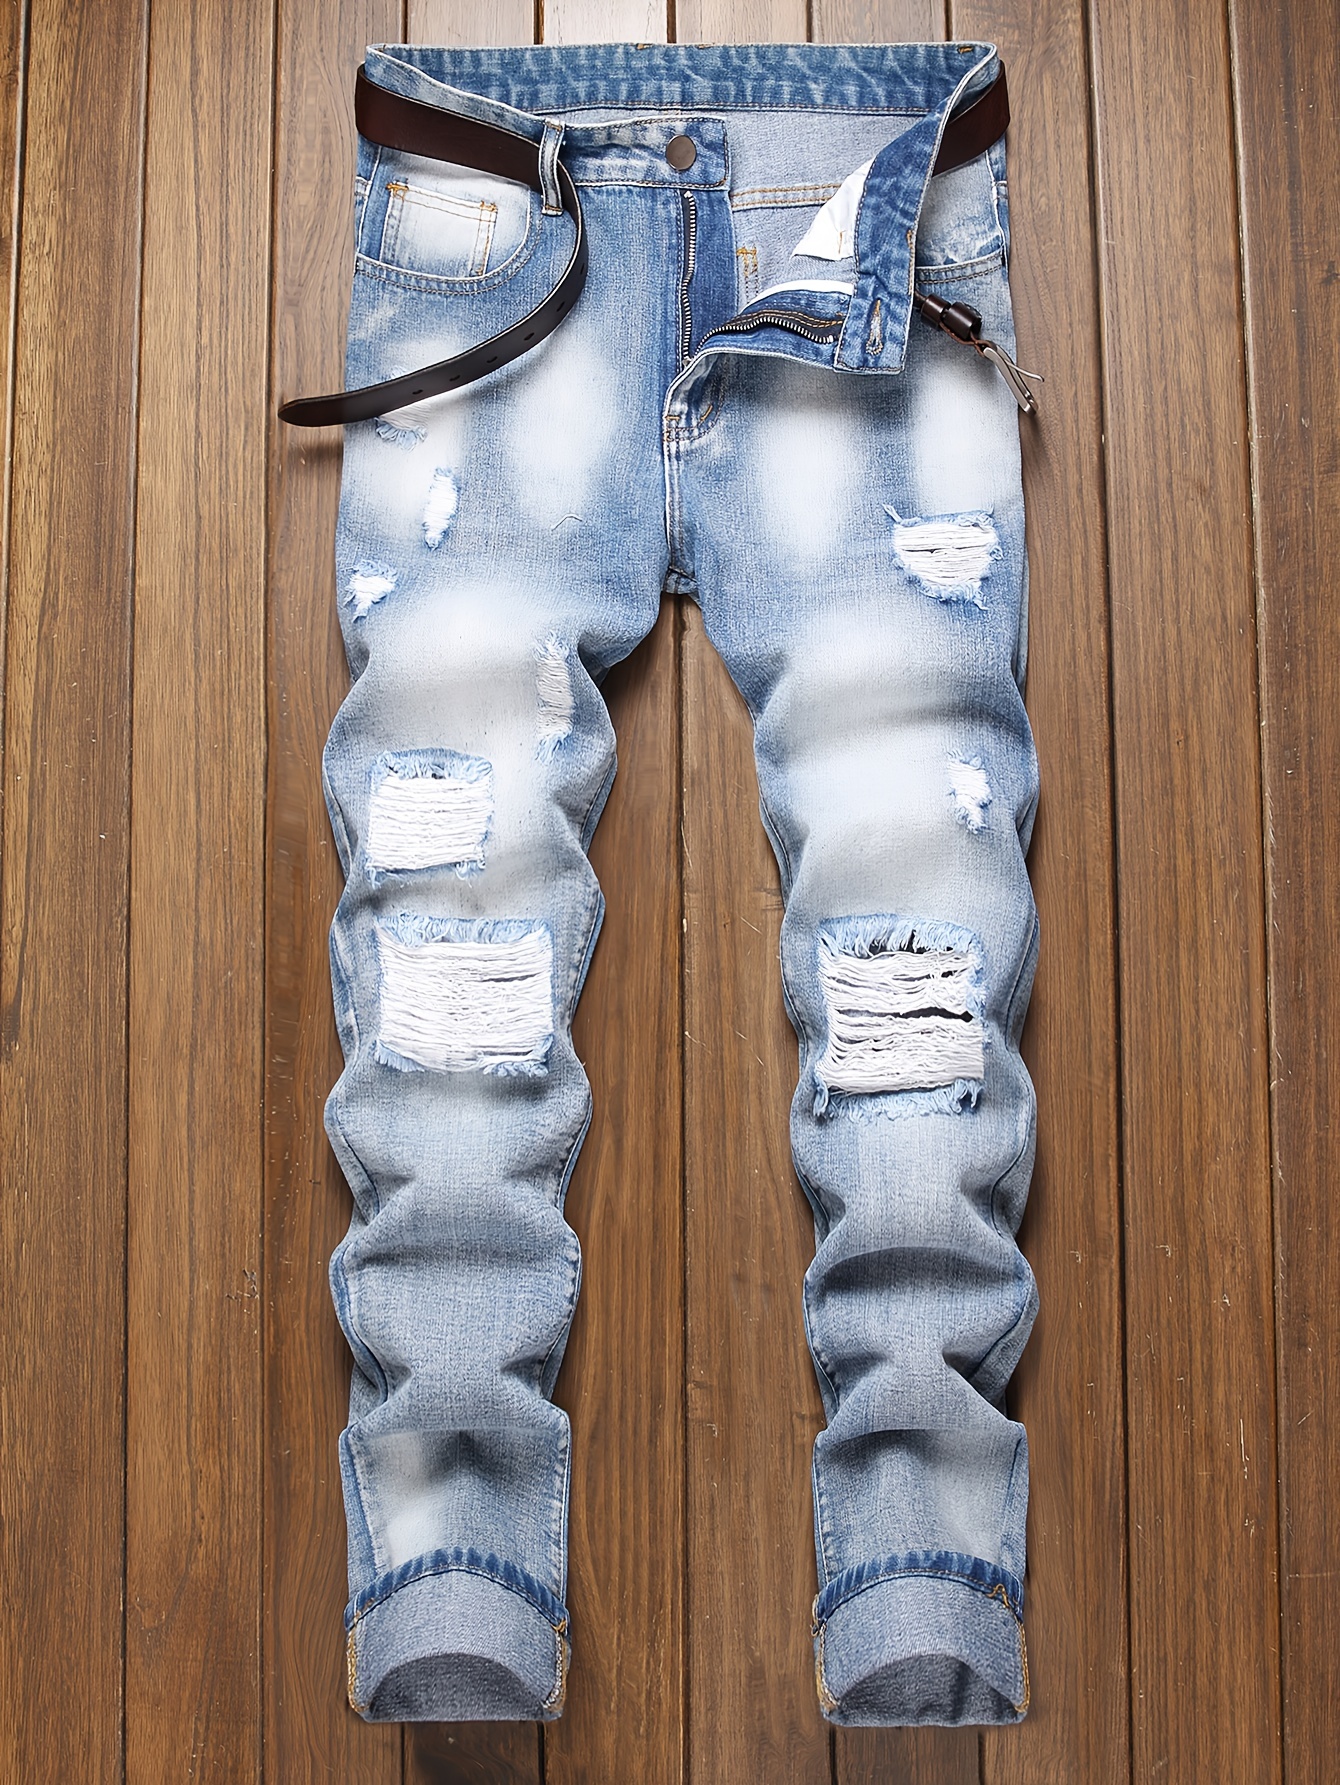  LSDJGDDE Jeans rasgados para hombre, jeans blancos